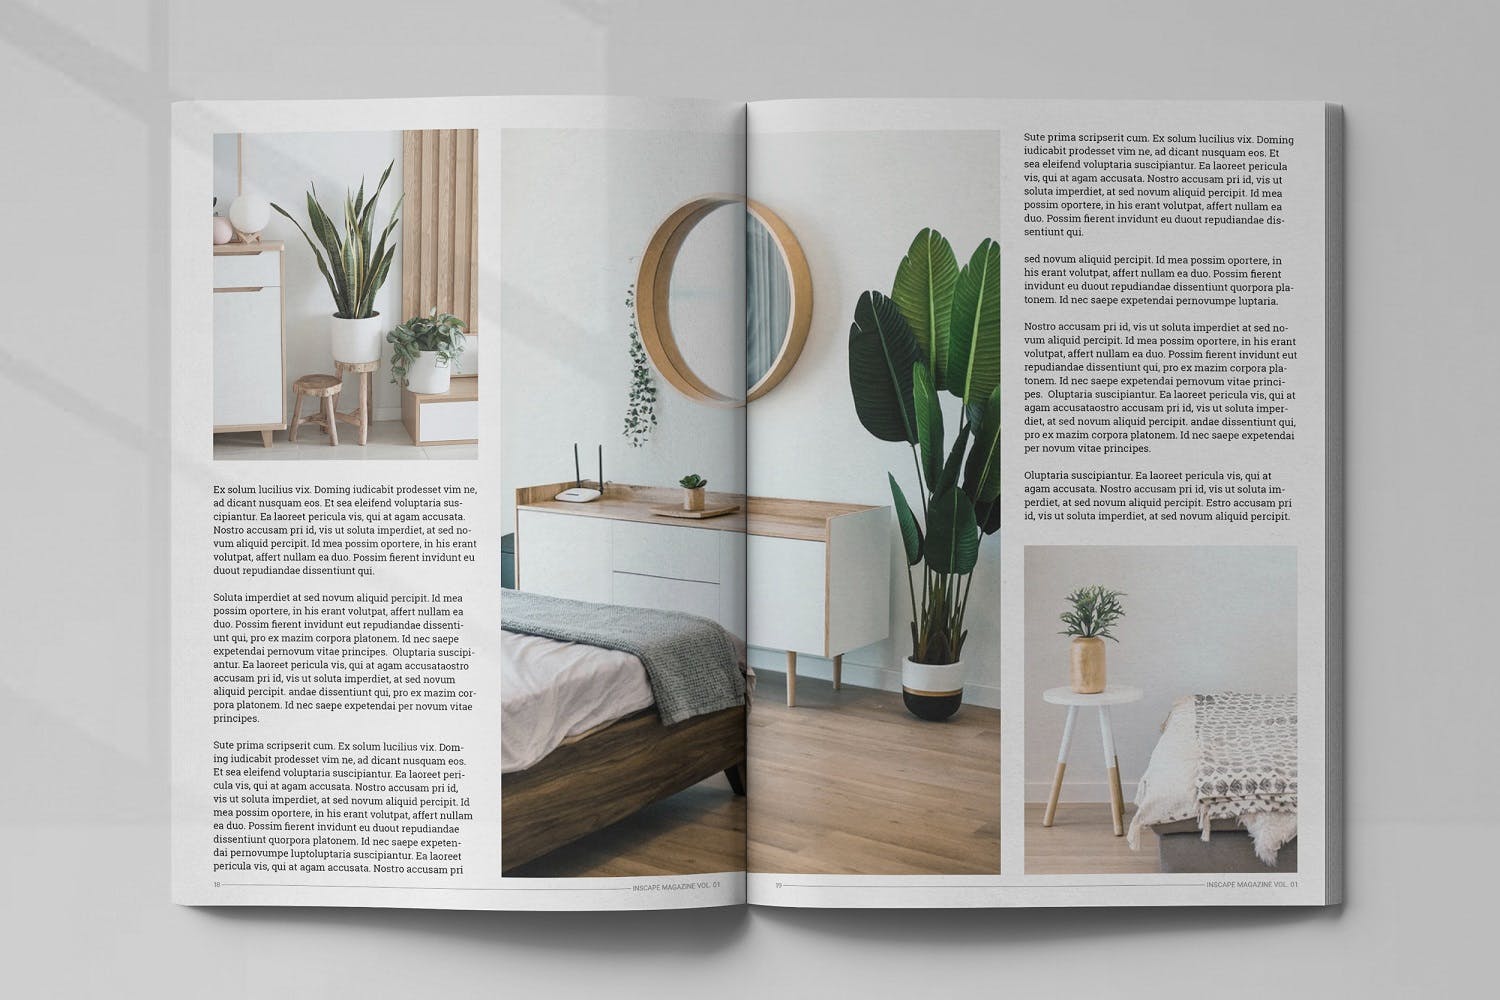 室内设计主题第一素材精选杂志排版设计模板 Inscape Interior Magazine插图(9)